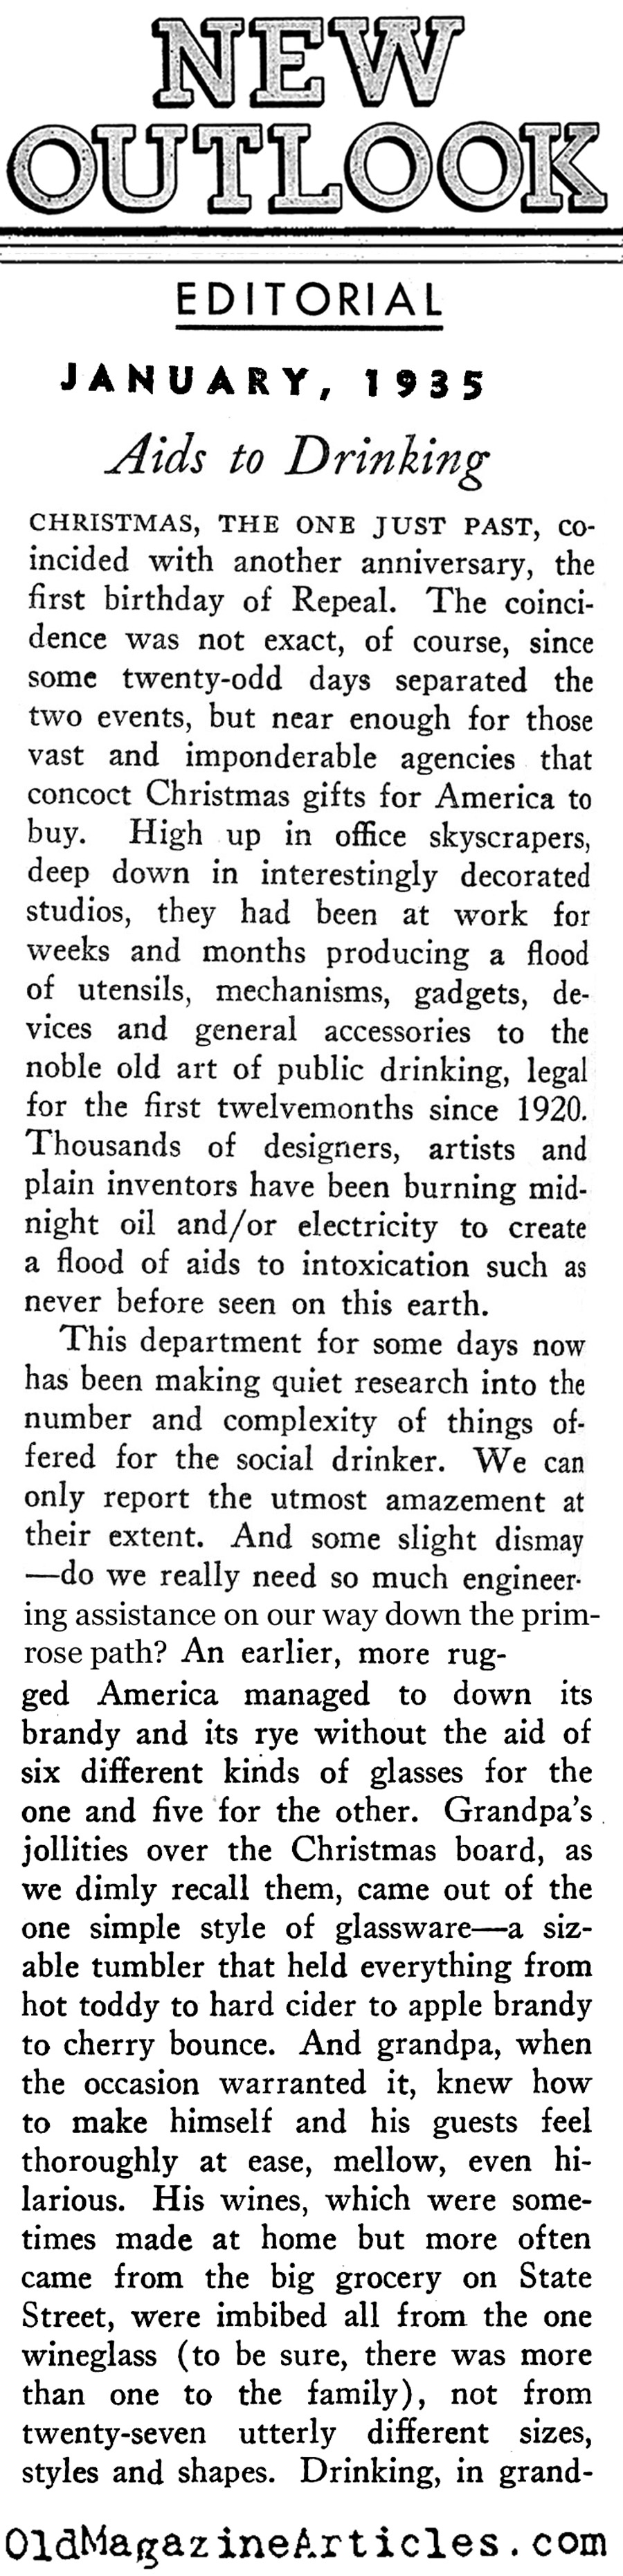 Liquor Up (New Outlook, 1935)